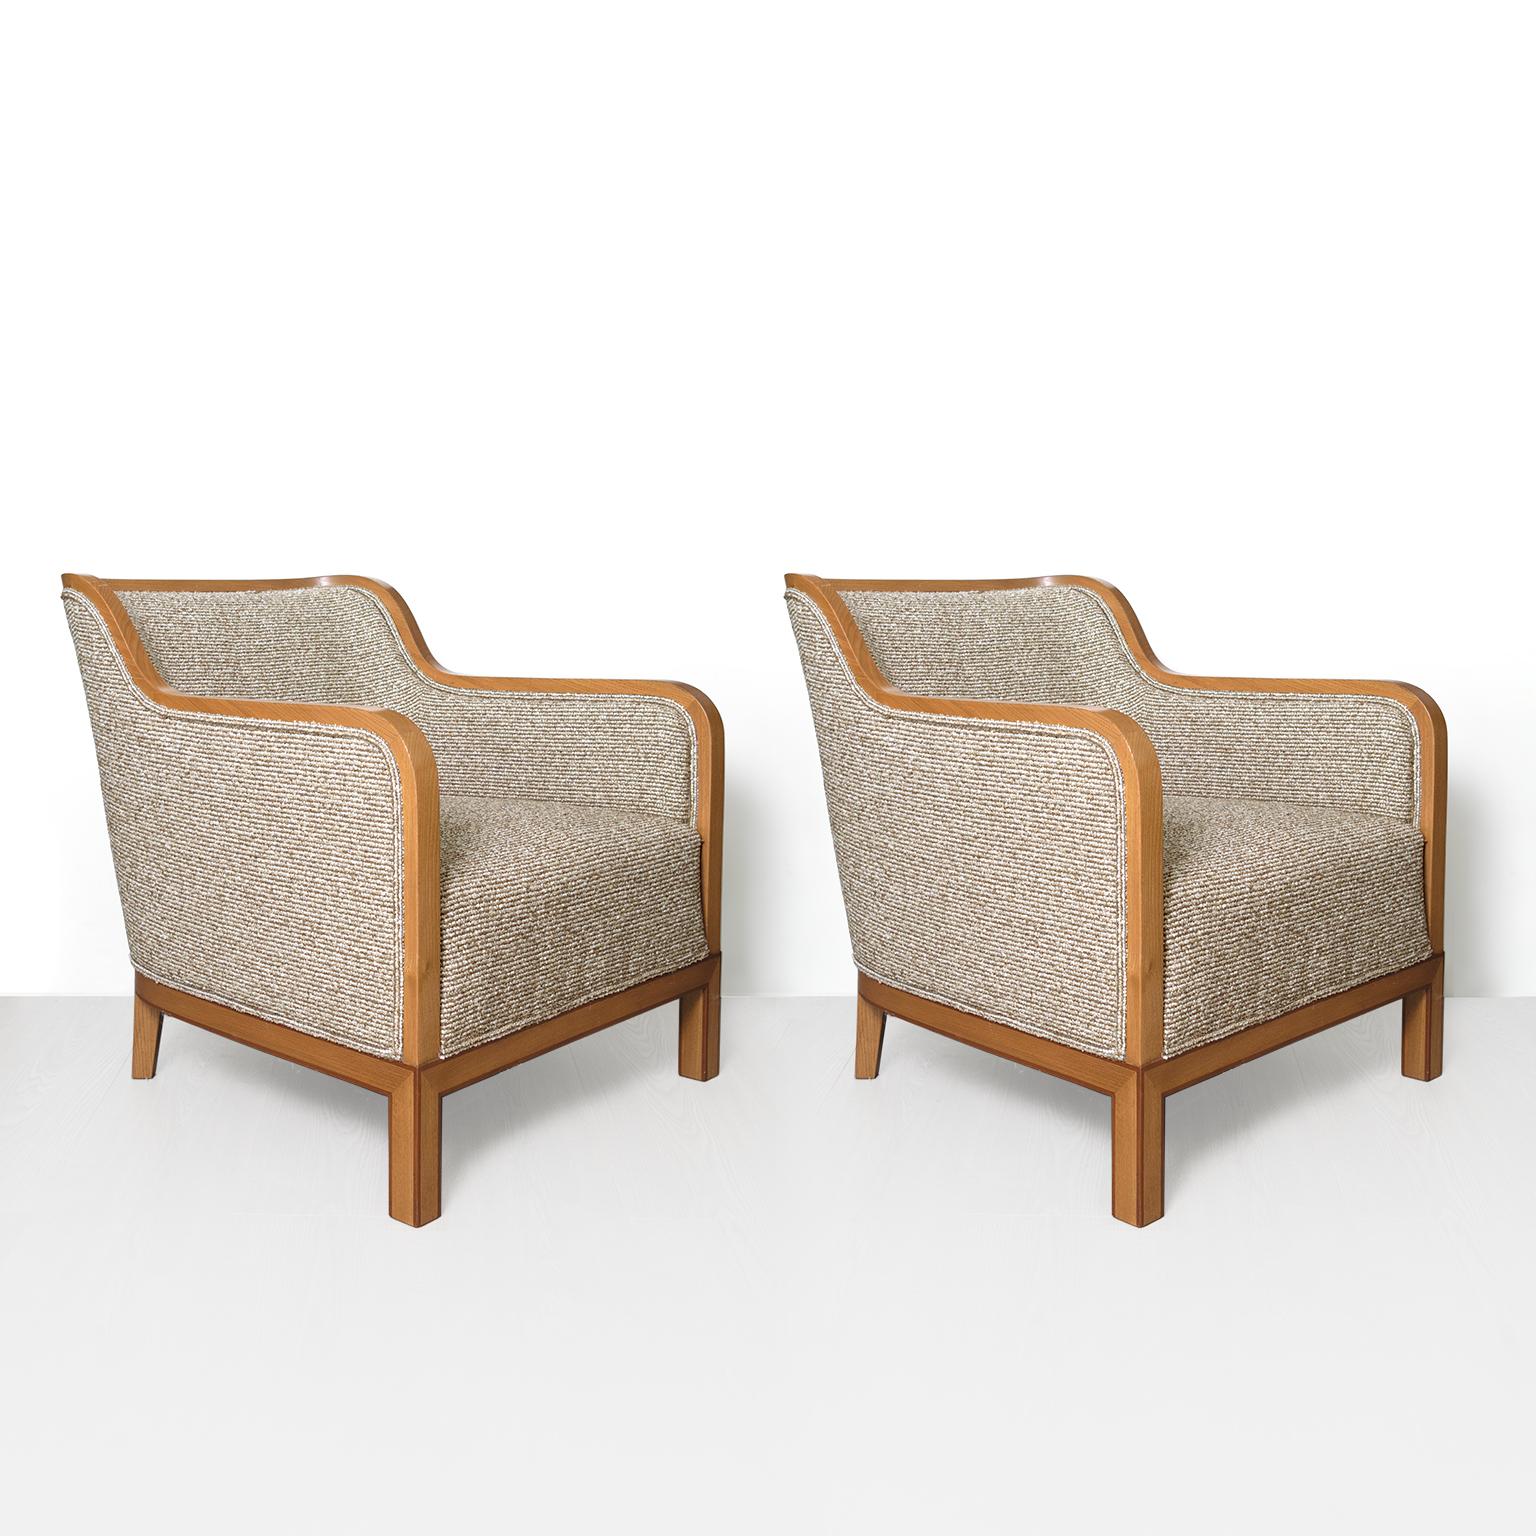 Une paire de chaises de salon suédoises art déco en orme avec des bandes de placage d'acajou, conçues par David Blomberg et fabriquées par Nordiska Kompaniet à Stockholm, circa 1930. Cette paire est d'une très belle taille avec un dossier